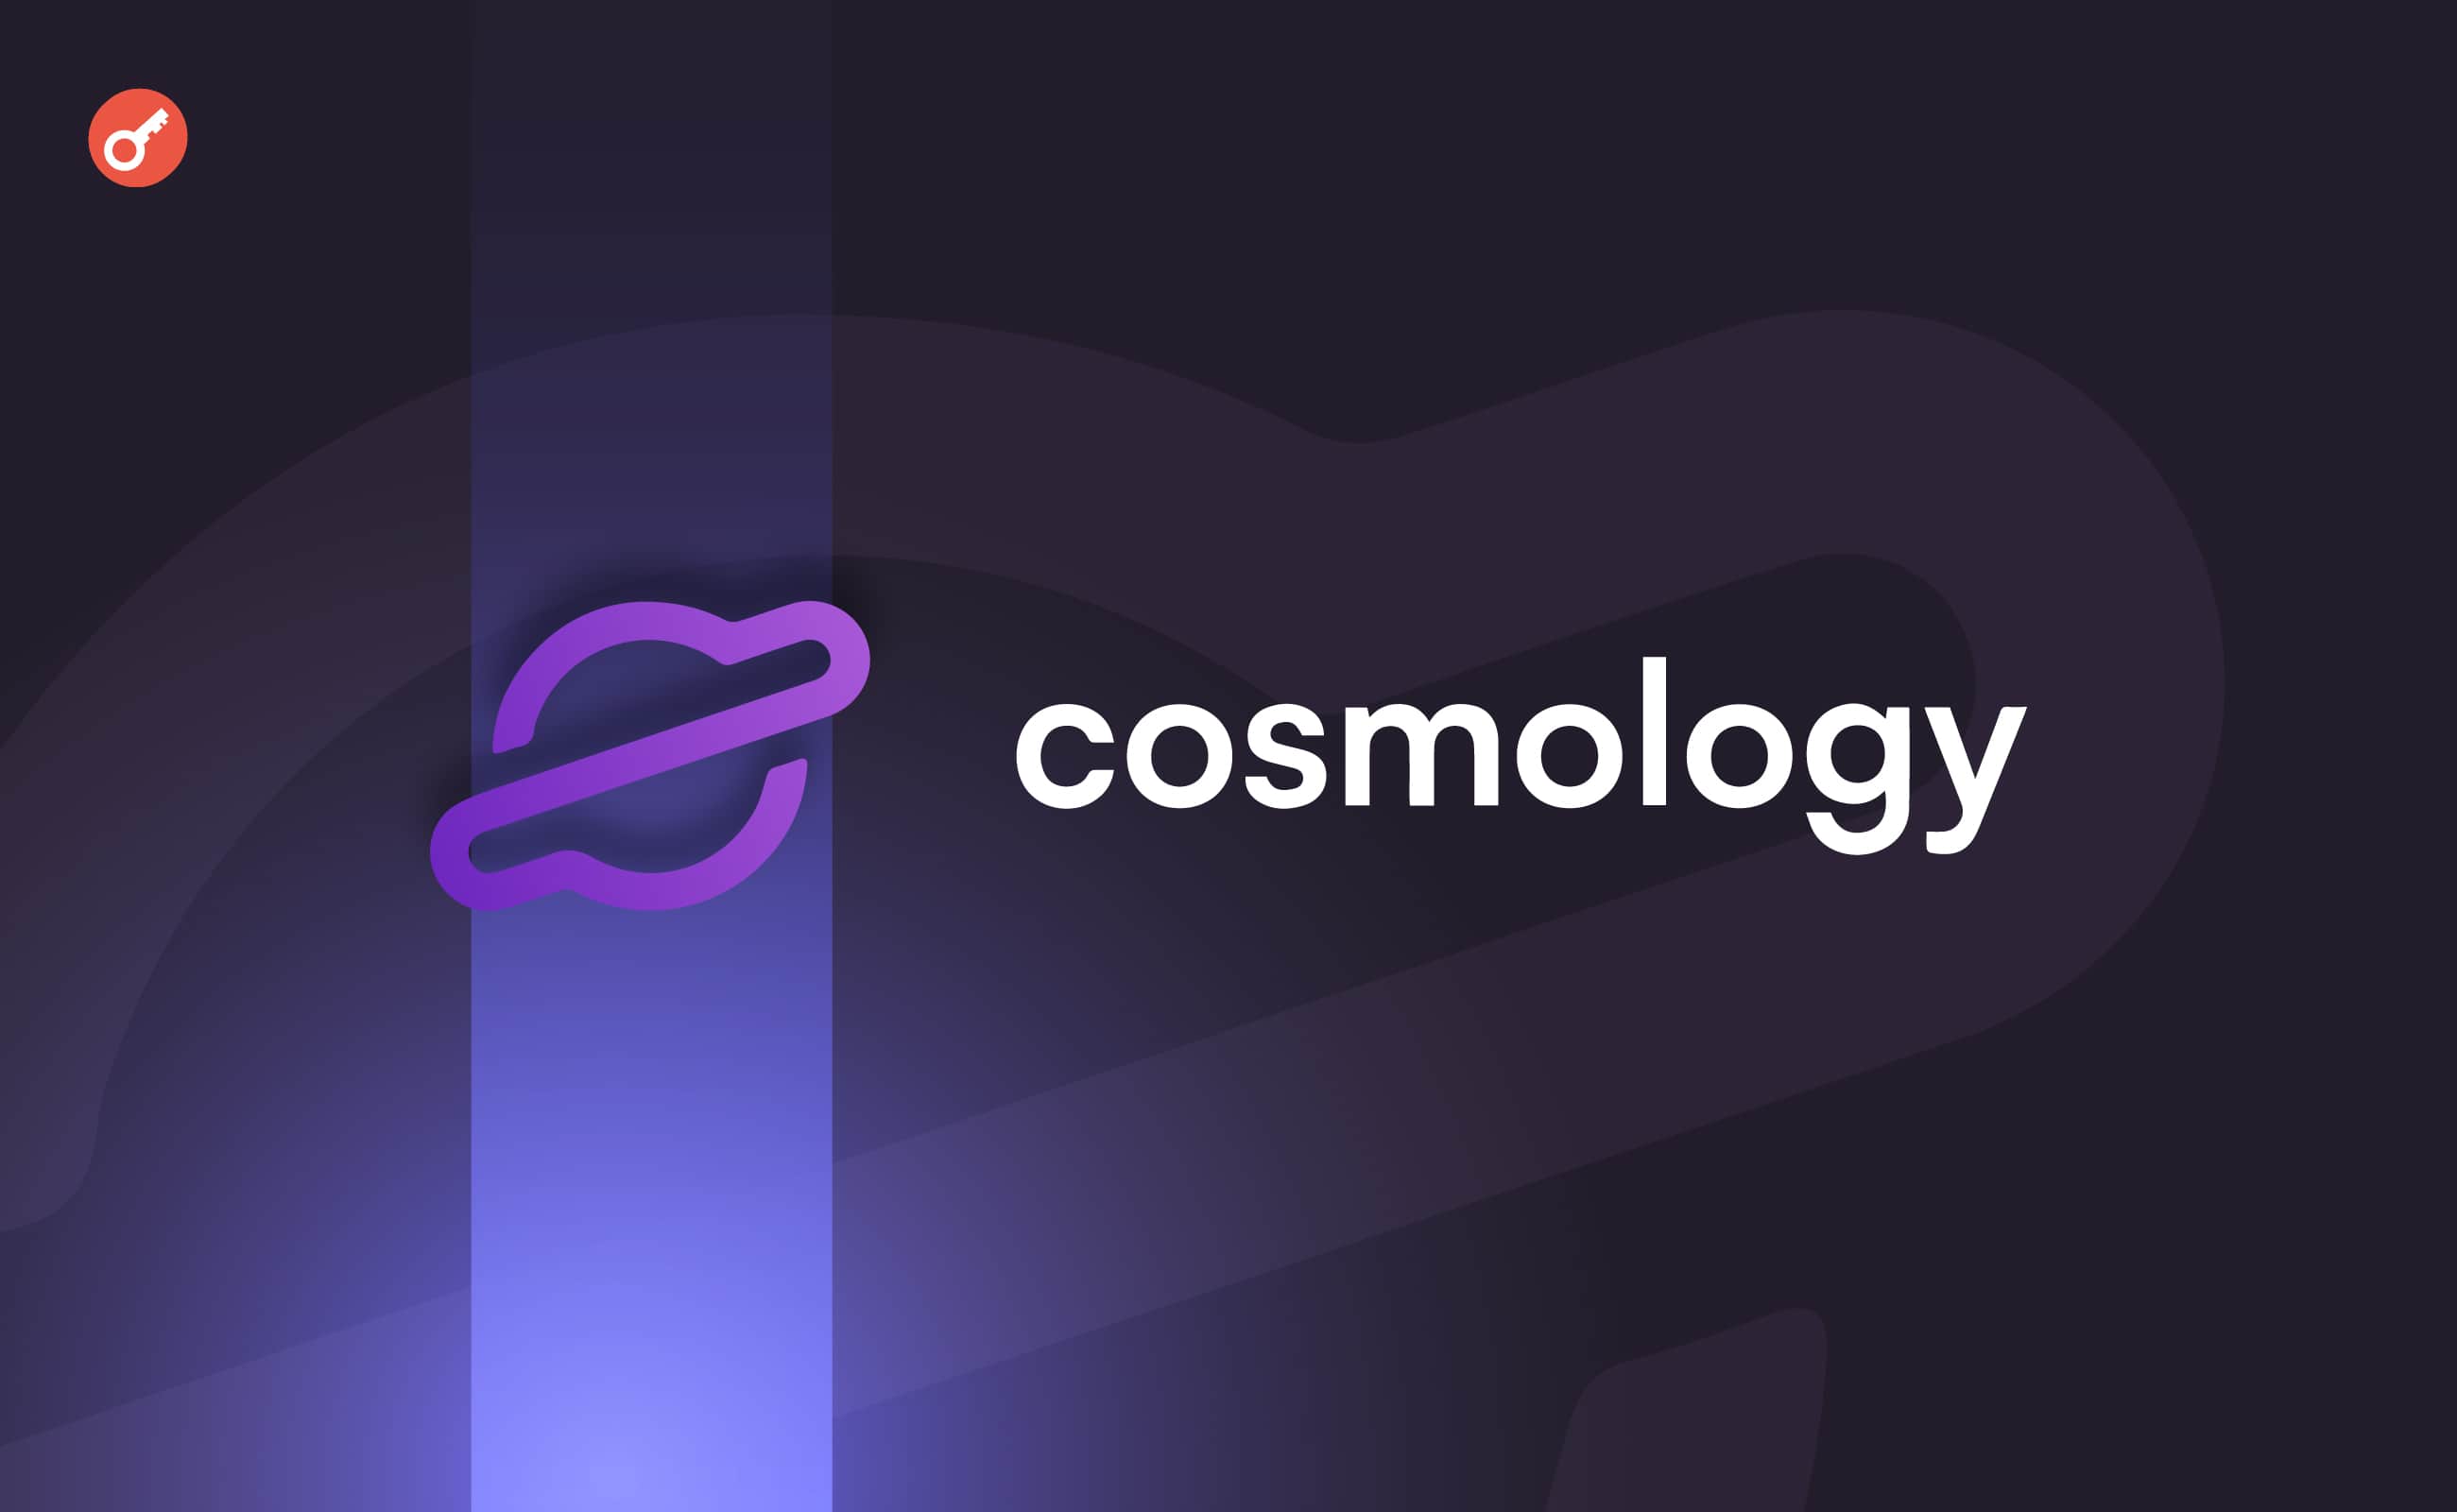 Платформа для розробників Cosmology залучила $5 млн інвестицій. Головний колаж новини.